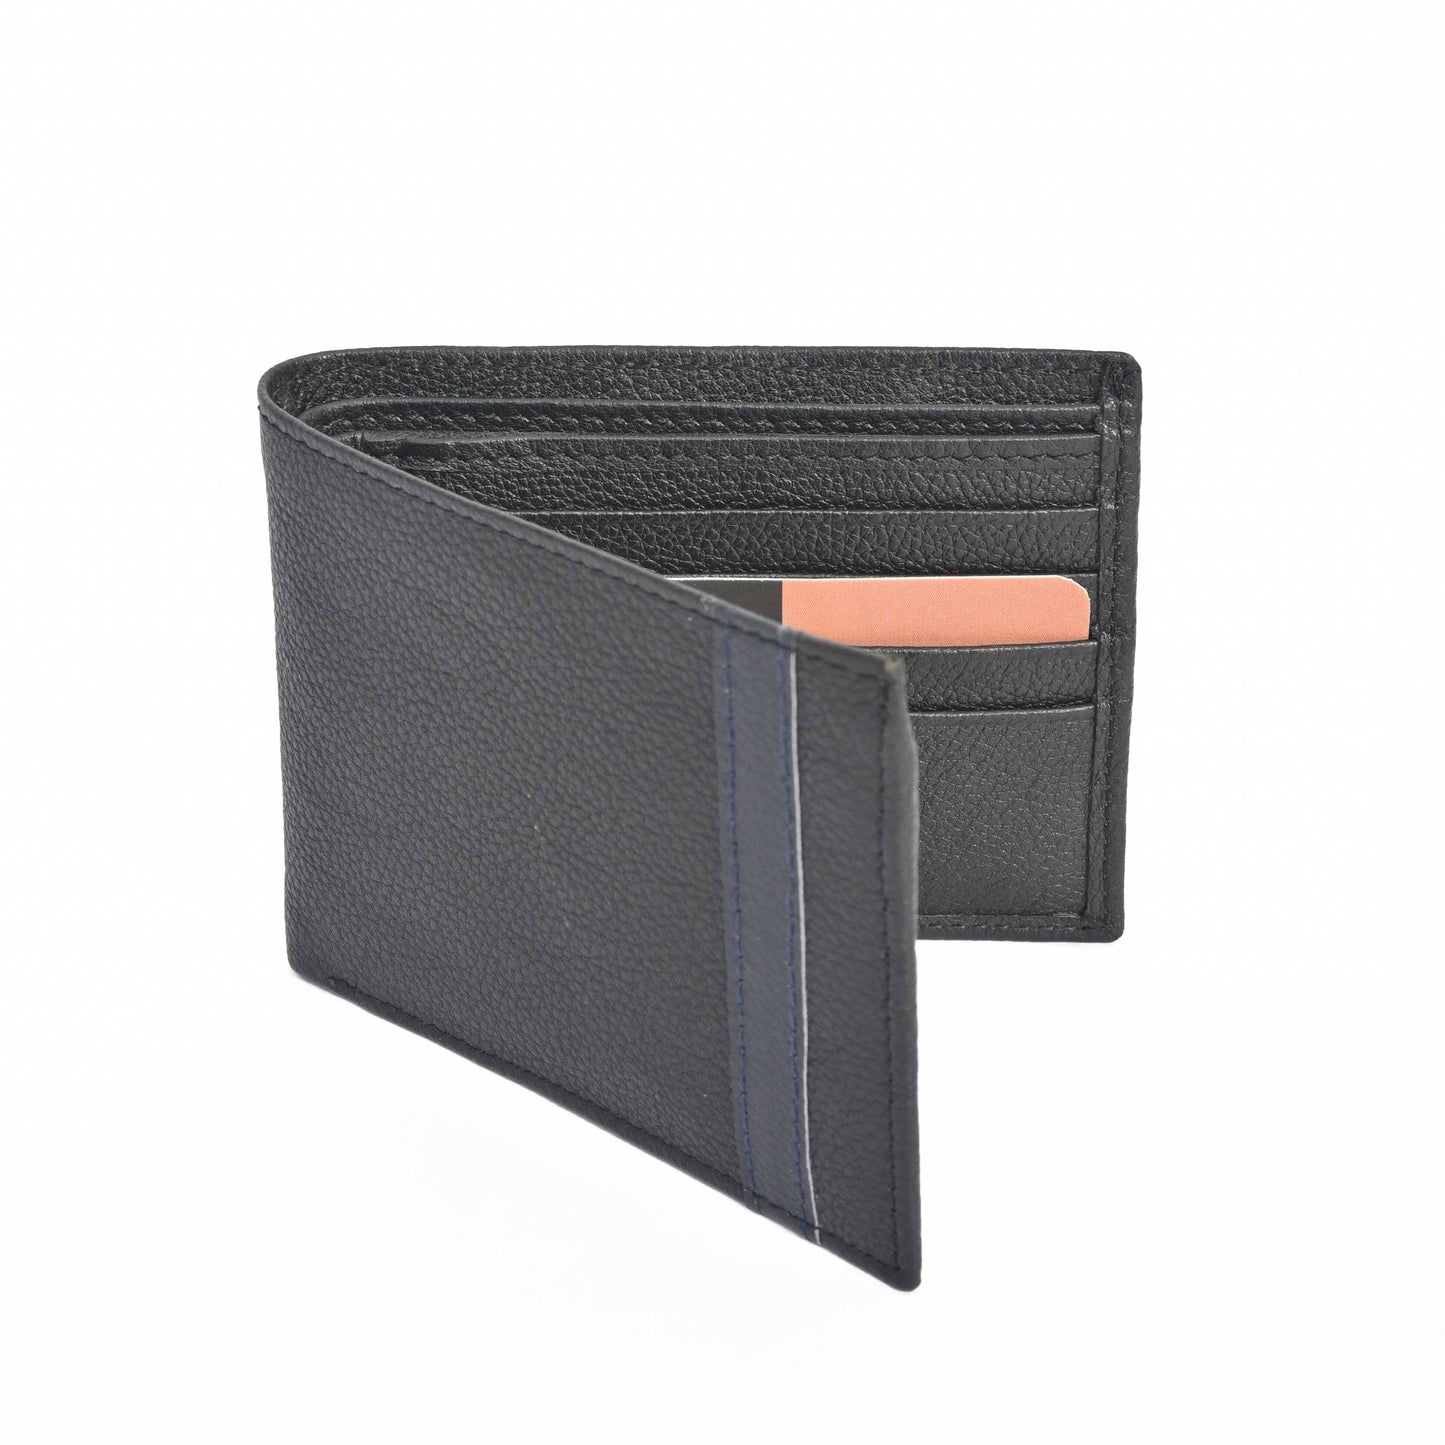 Oxenhide Men's UK4 Genuine Leather Pocket Wallet Wallet Oxenhide Sale Basis Black 